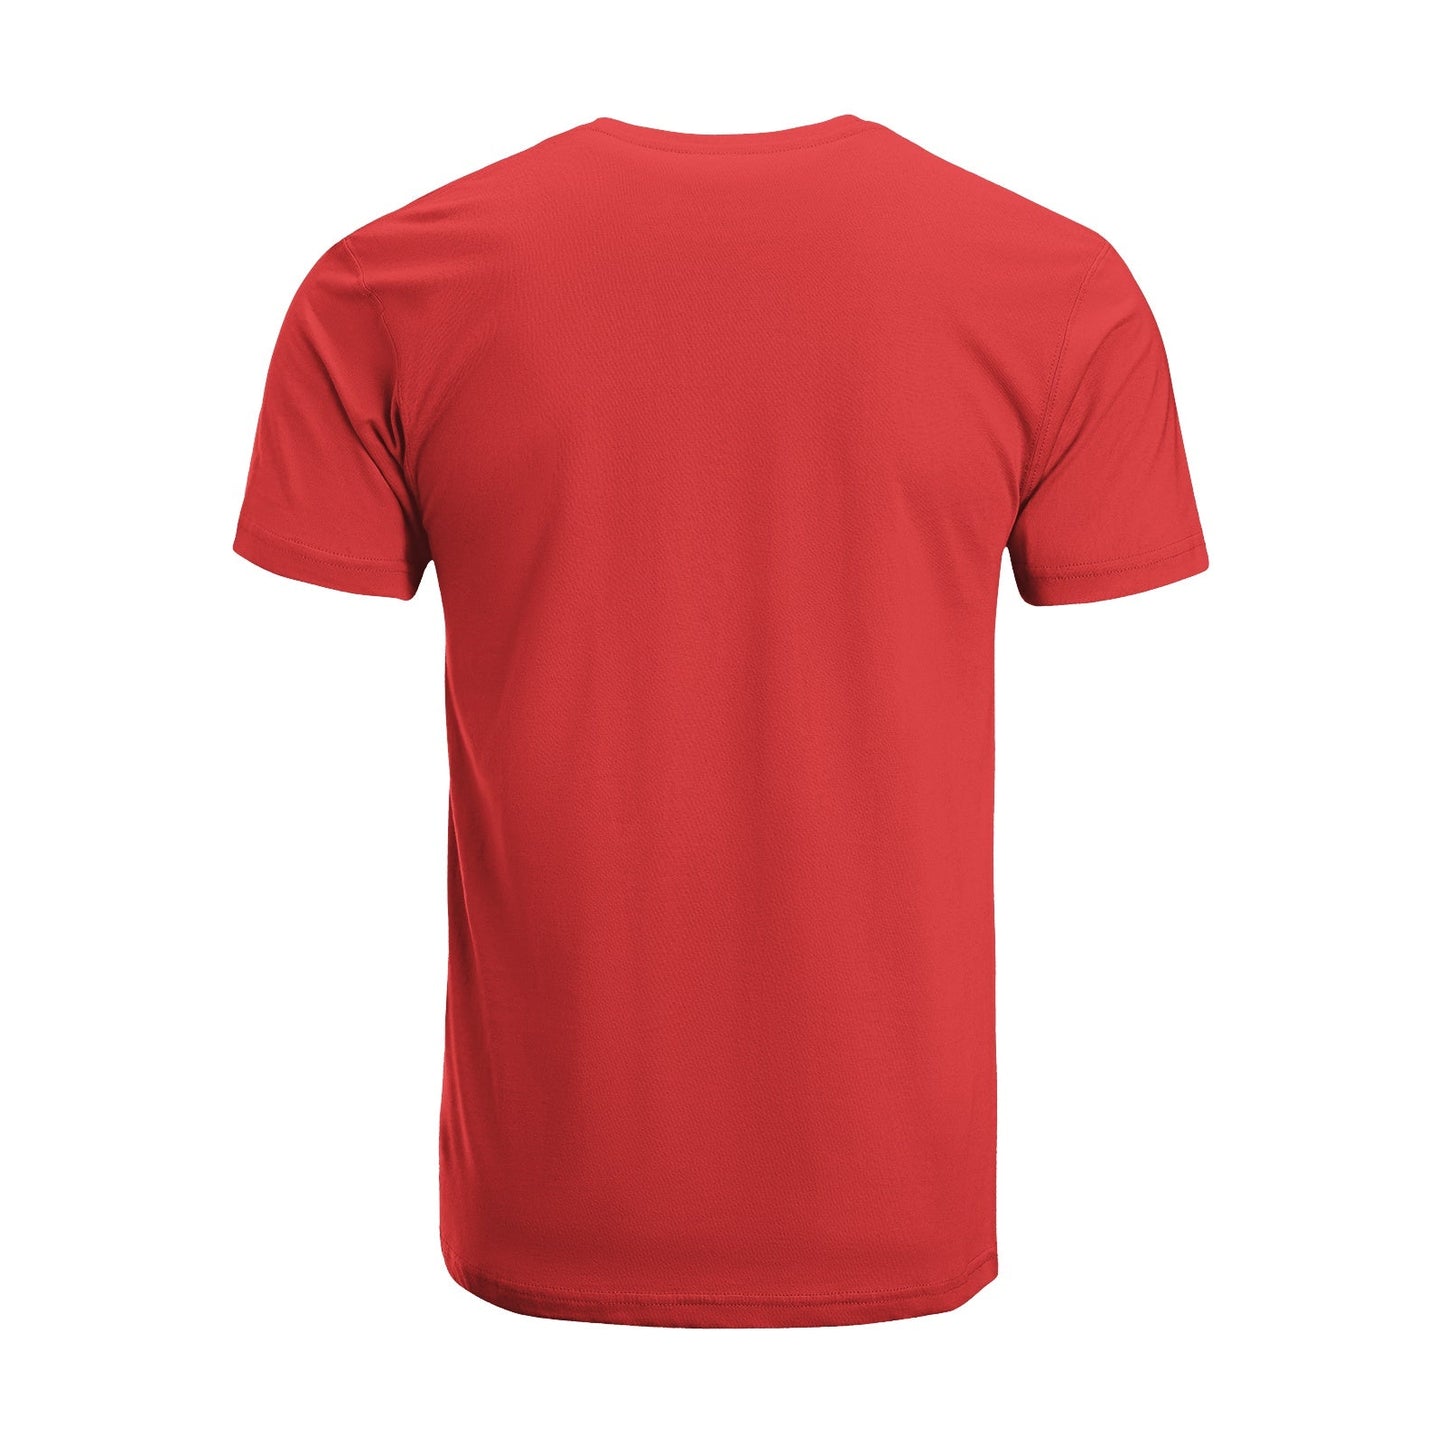 Unisex Short Sleeve Crew Neck Cotton Jersey T-Shirt TRUCK 27